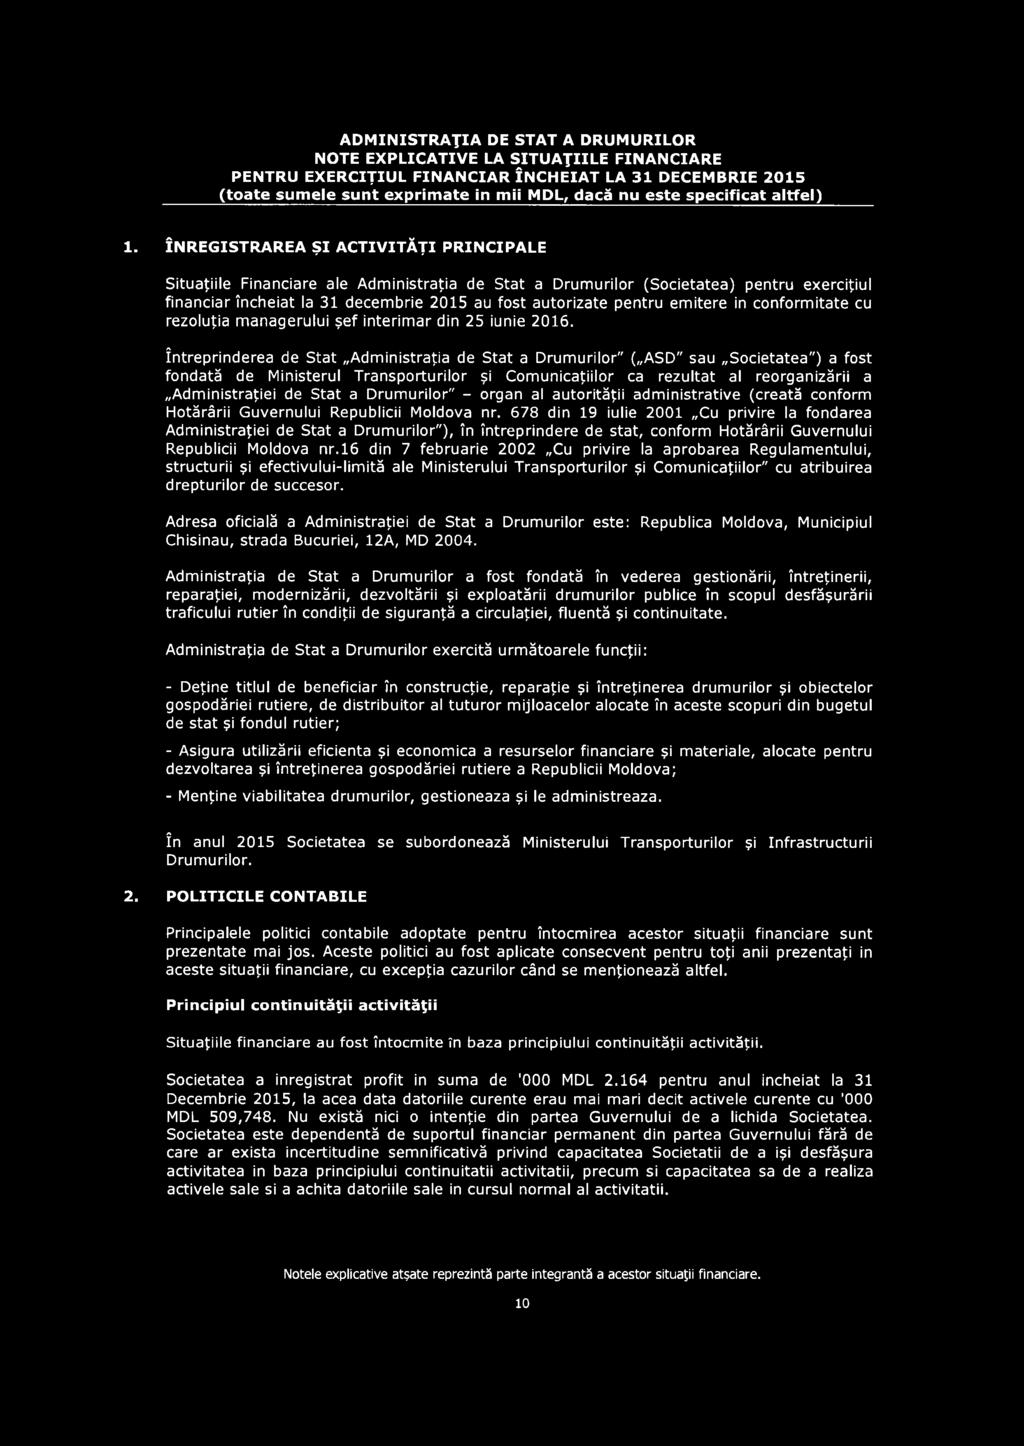 Stat a Drum urilor" - organ al autorităţii adm inistrative (creată conform Hotărârii Guvernului Republicii Moldova nr.